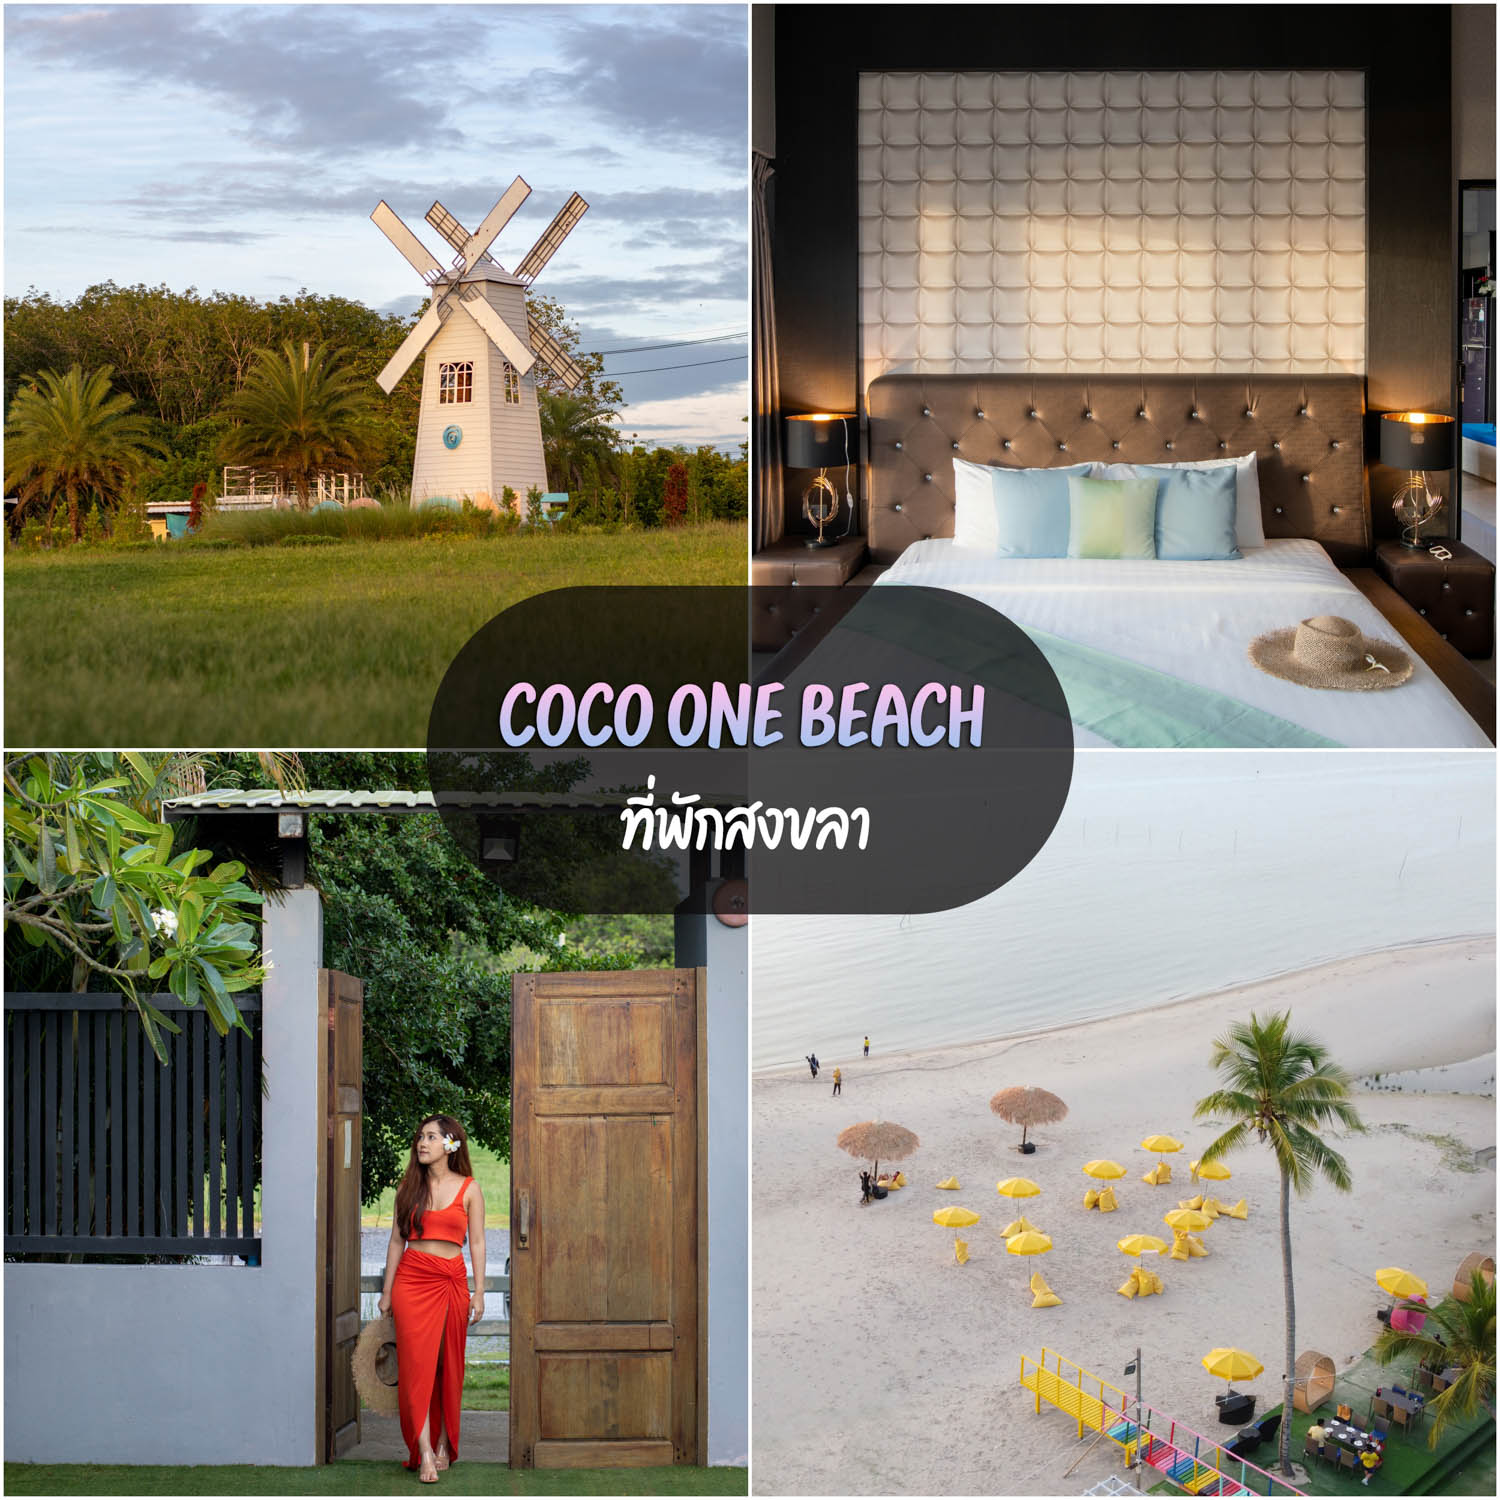 Coco one Beach ที่พักจะนะสงขลา ริมชายหาดทะเลสะกอม สวยๆวิวหลักล้าน ร้านอาหารอร่อย